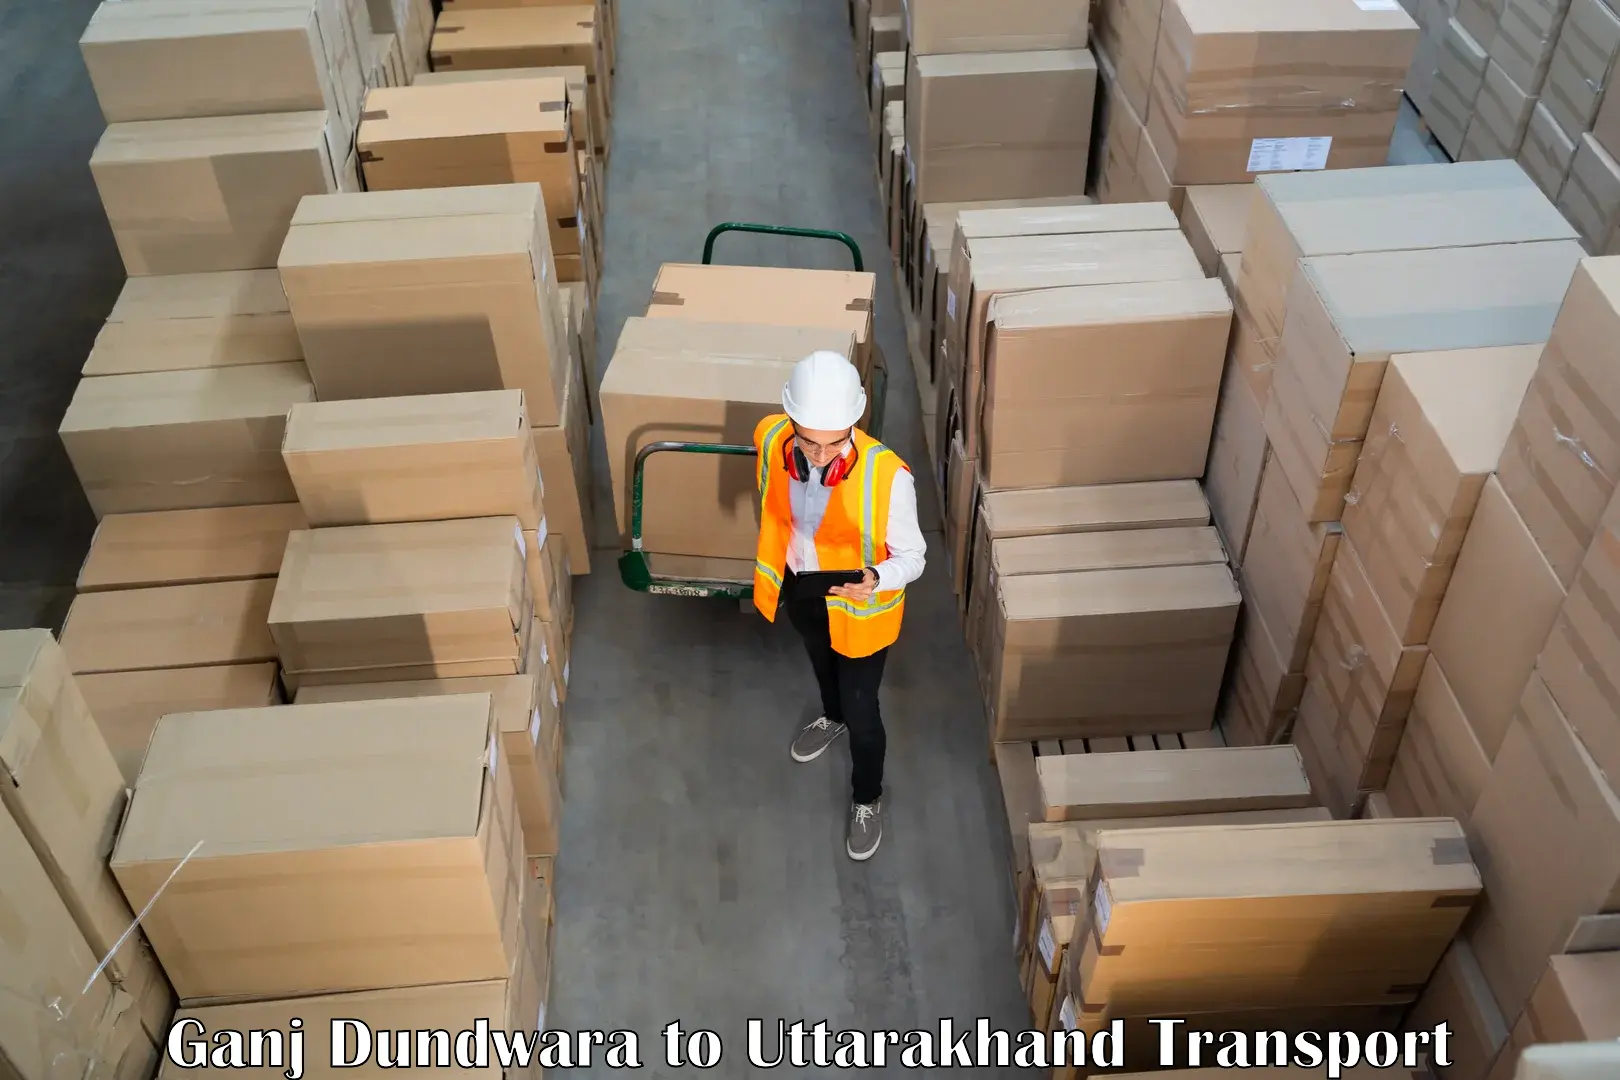 Truck transport companies in India Ganj Dundwara to Kashipur